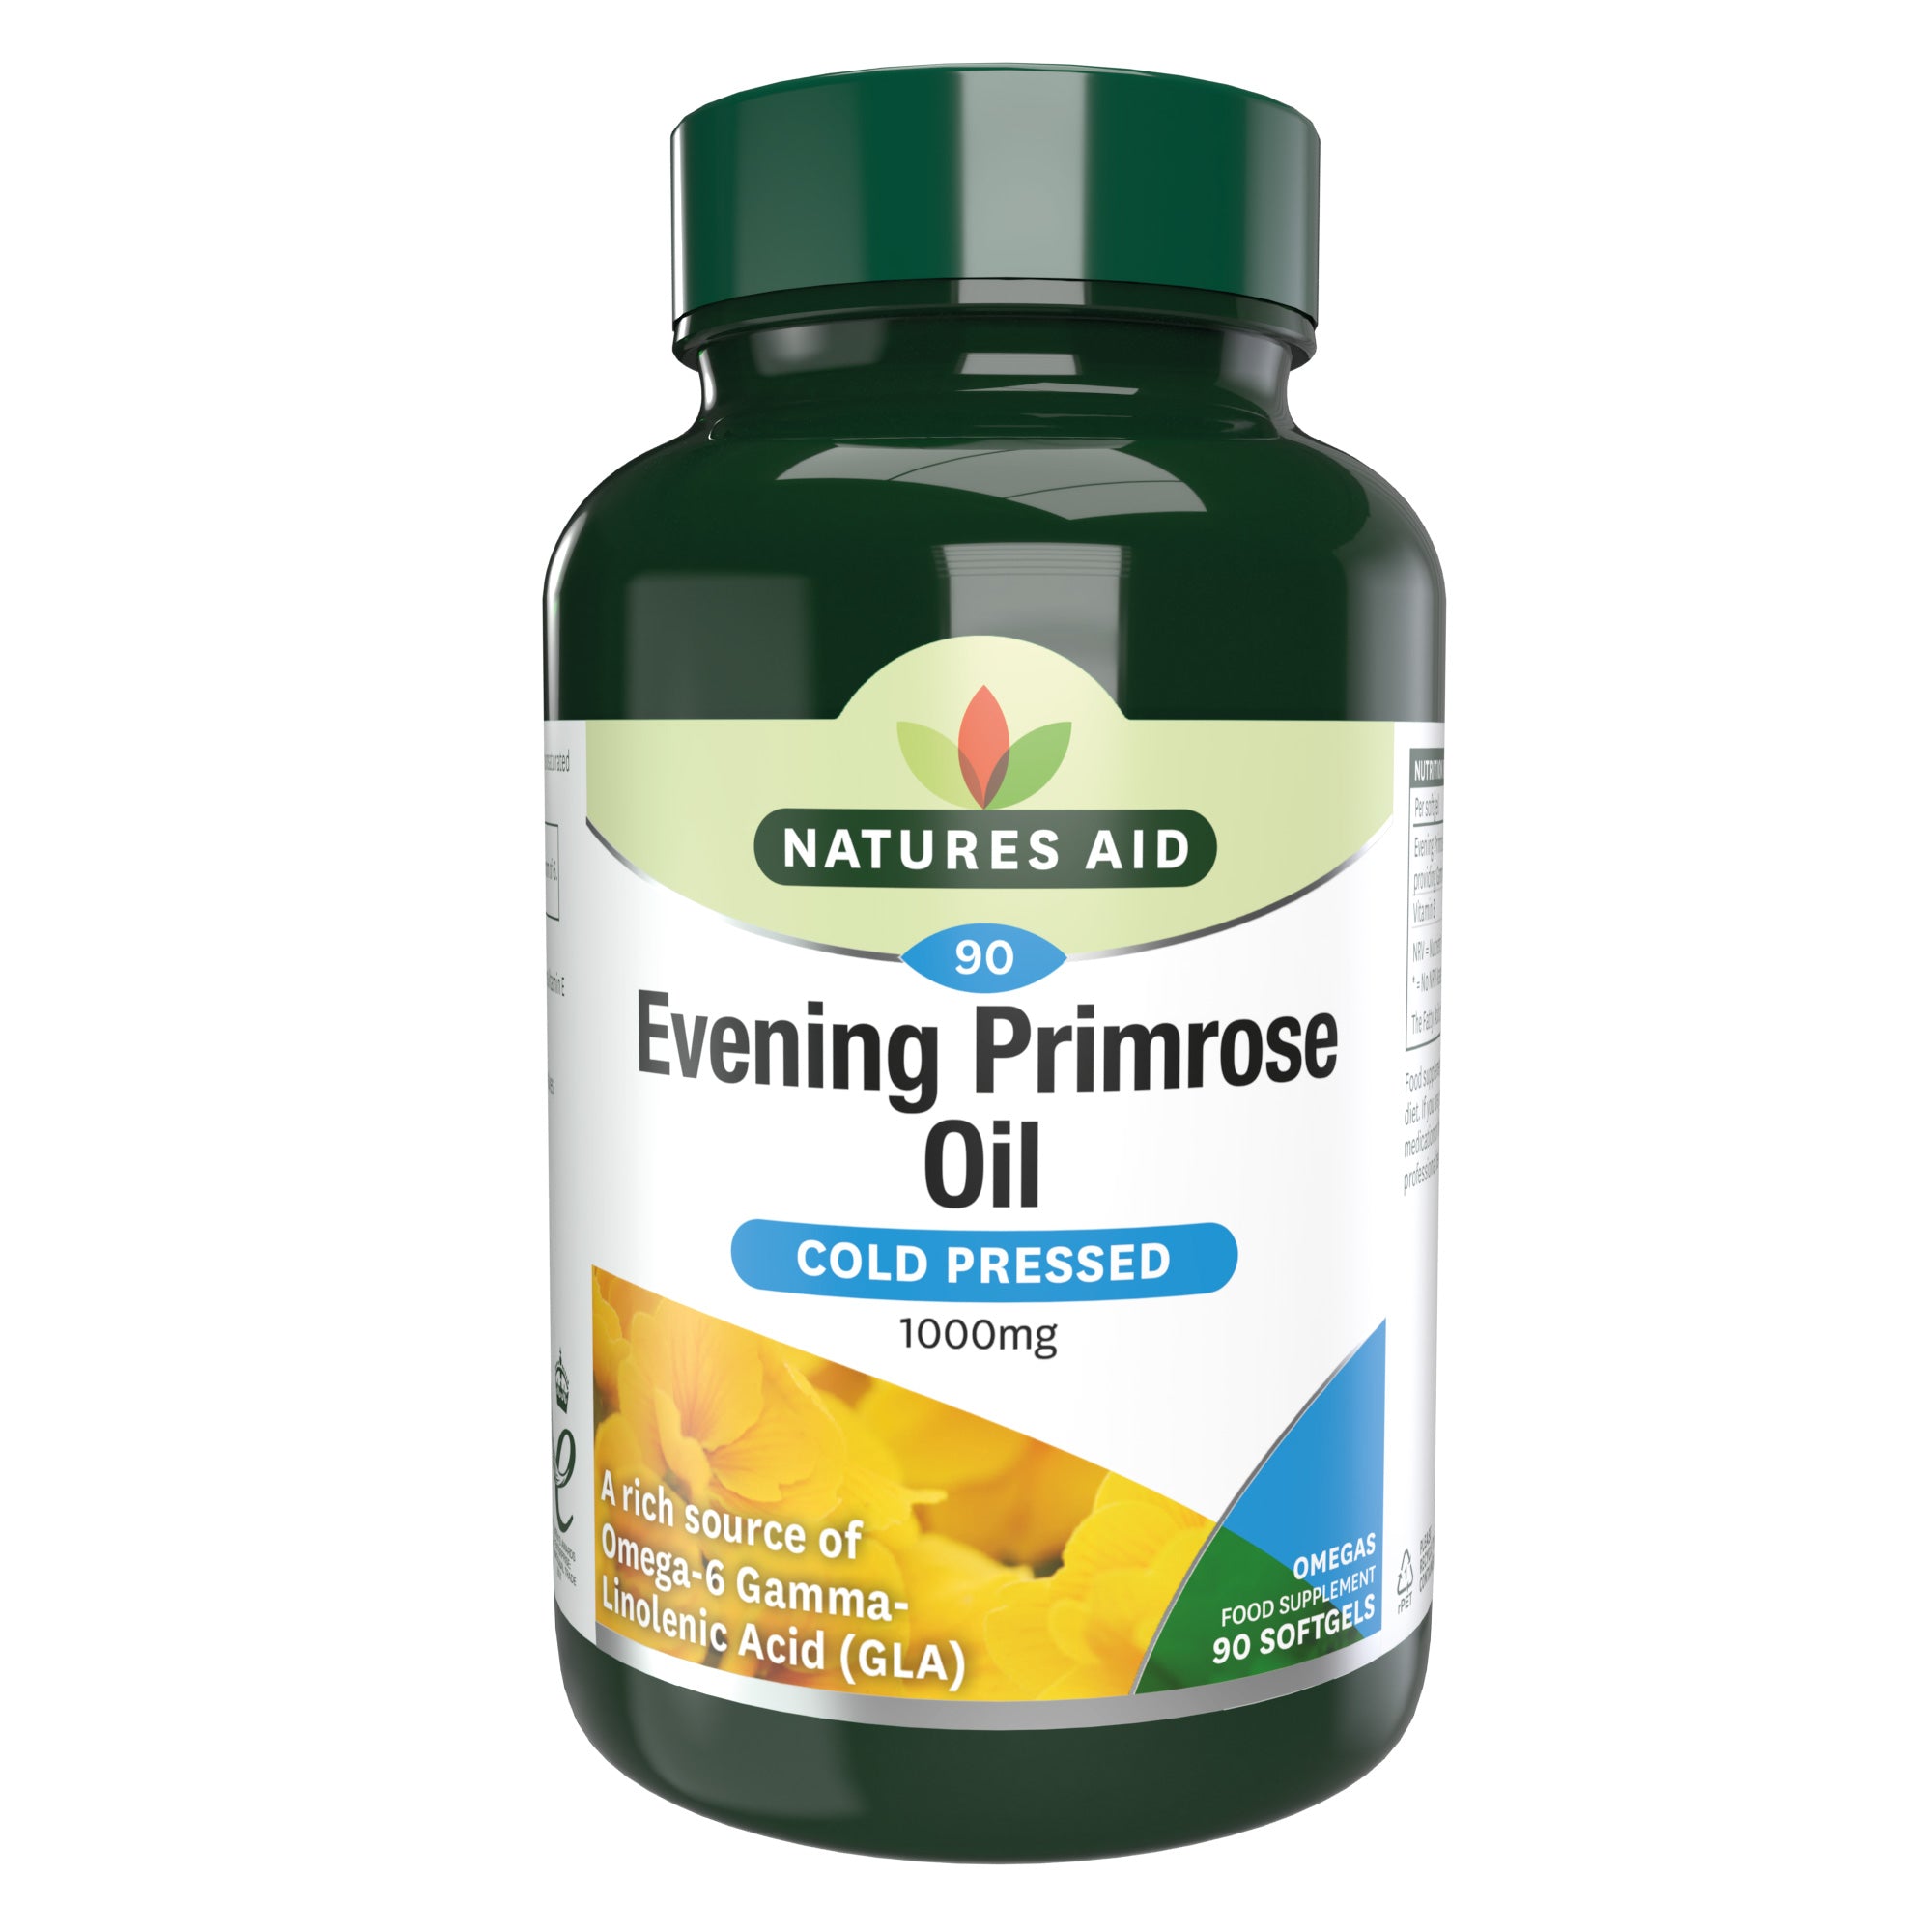 Natures Aid Evening Primrose Oil 1000mg, 90 capsules